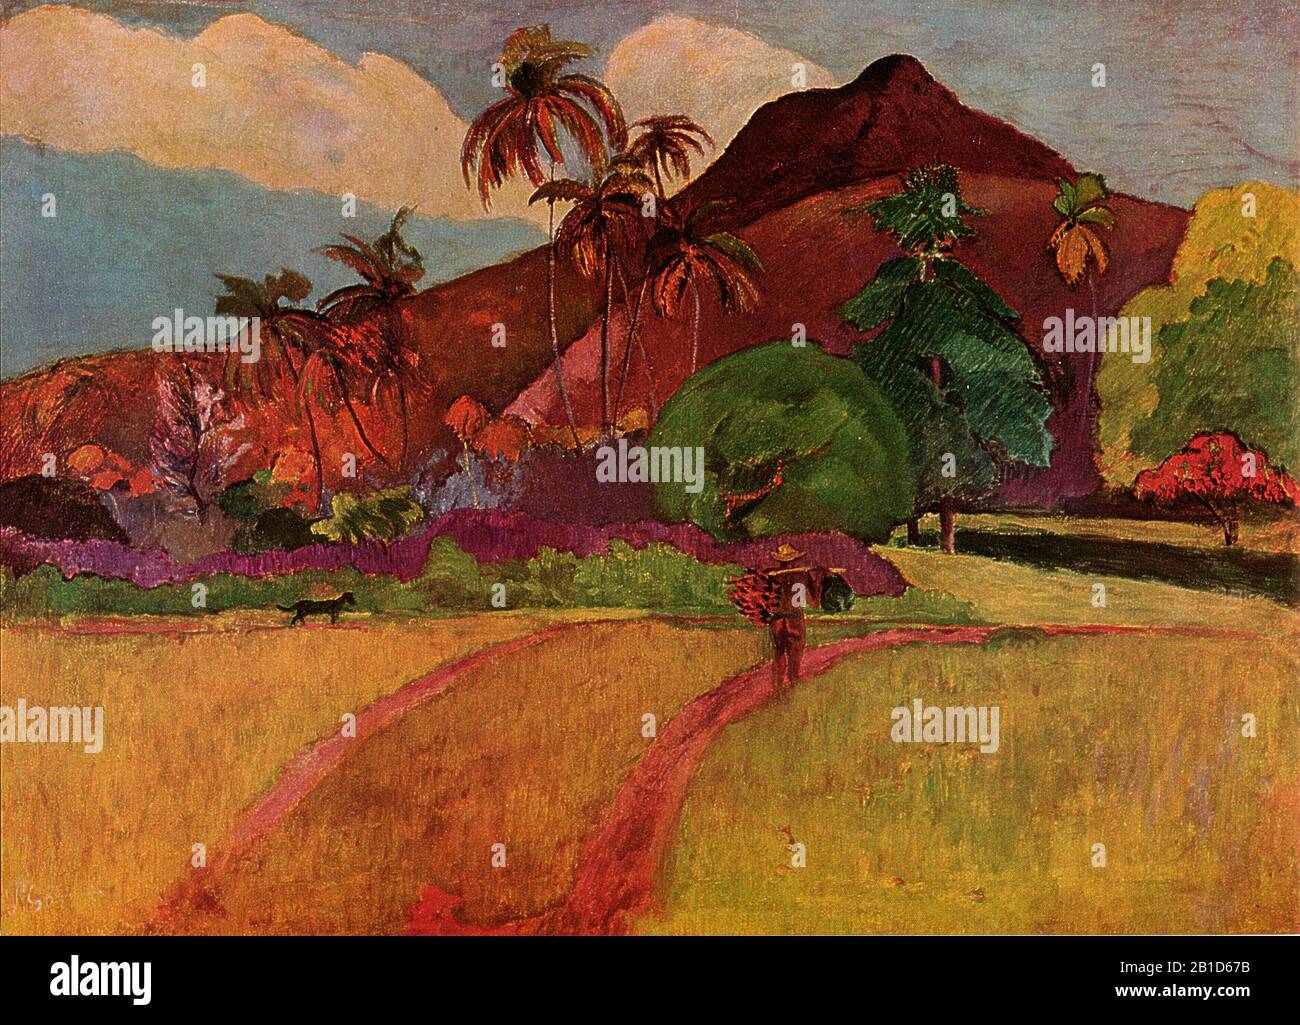 Tahitianische Landschaft (1893) Gemälde des 19. Jahrhunderts von Paul Gauguin - Sehr hohe Auflösung und Qualitätsbild Stockfoto